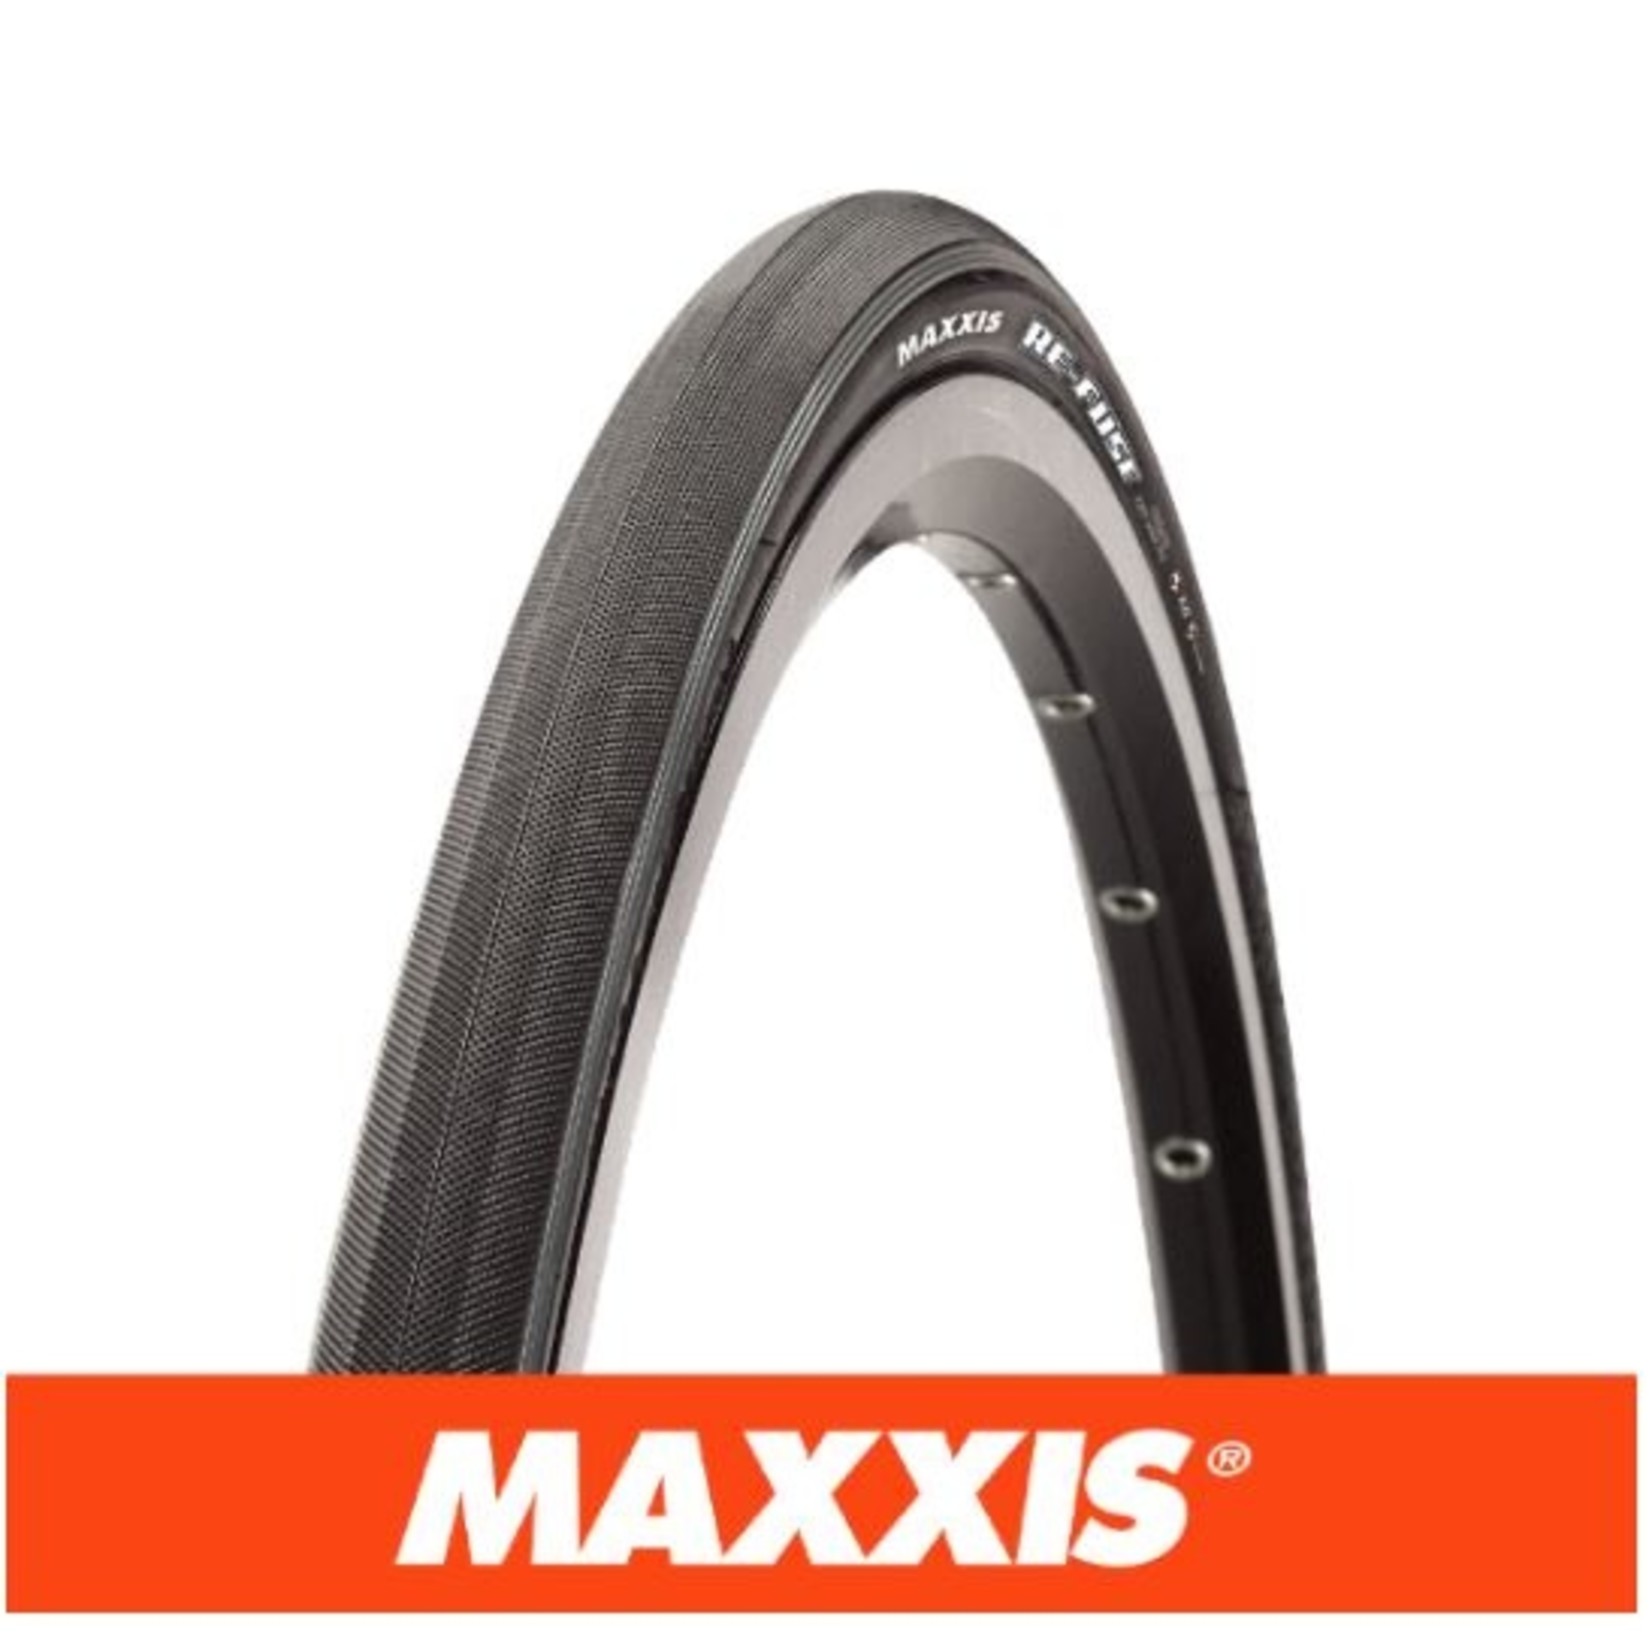 Maxxis Maxxis Refuse Bike Tyre - 700 X 23 - Folding 60Tpi Maxxshield - Black - Pair